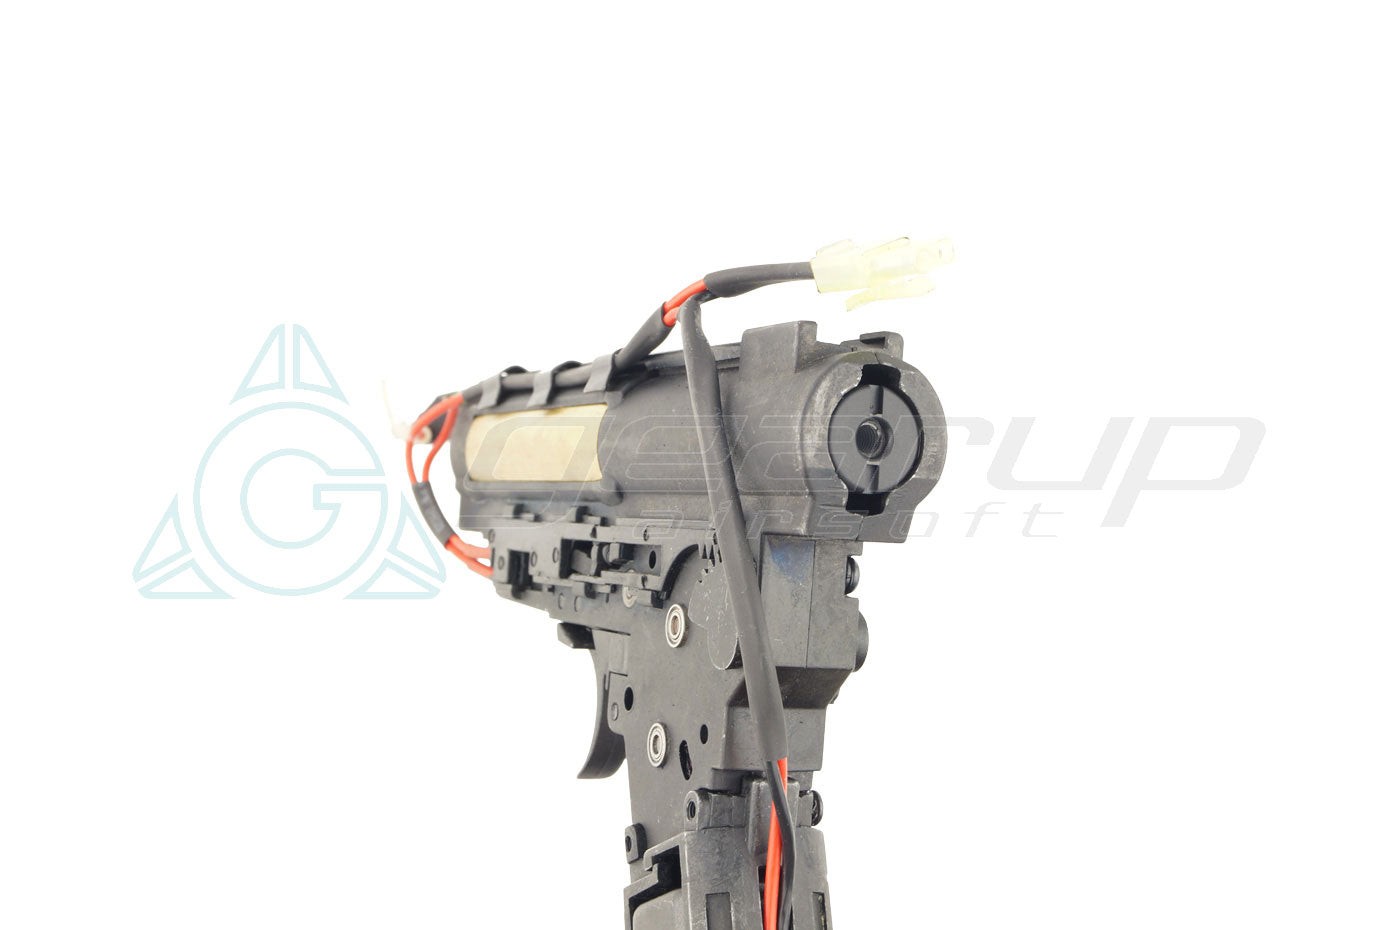 Ver.3 Complete Gearbox Kit (High Torque Motor)